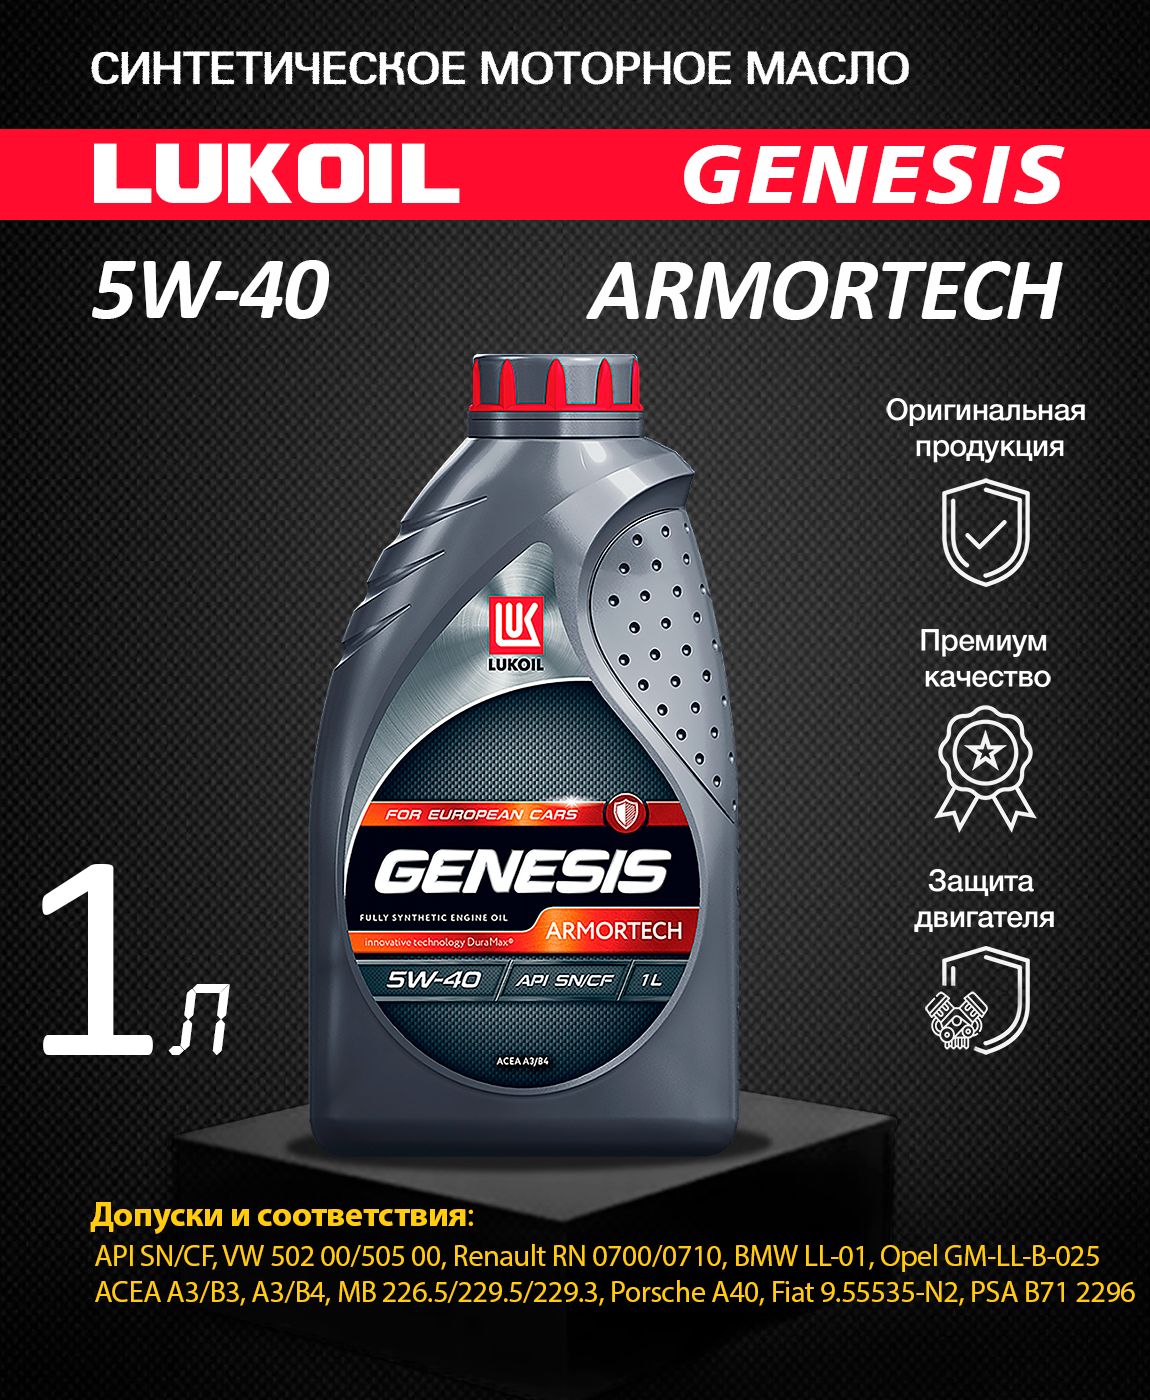 Лукойл Genesis Armortech 5w-40 1л. Lukoil Genesis Armortech 5w-40 1л. 1607013 Lukoil Genesis Armortech 5w-40 5л. Genesis Armortech for European cars 5w-40.